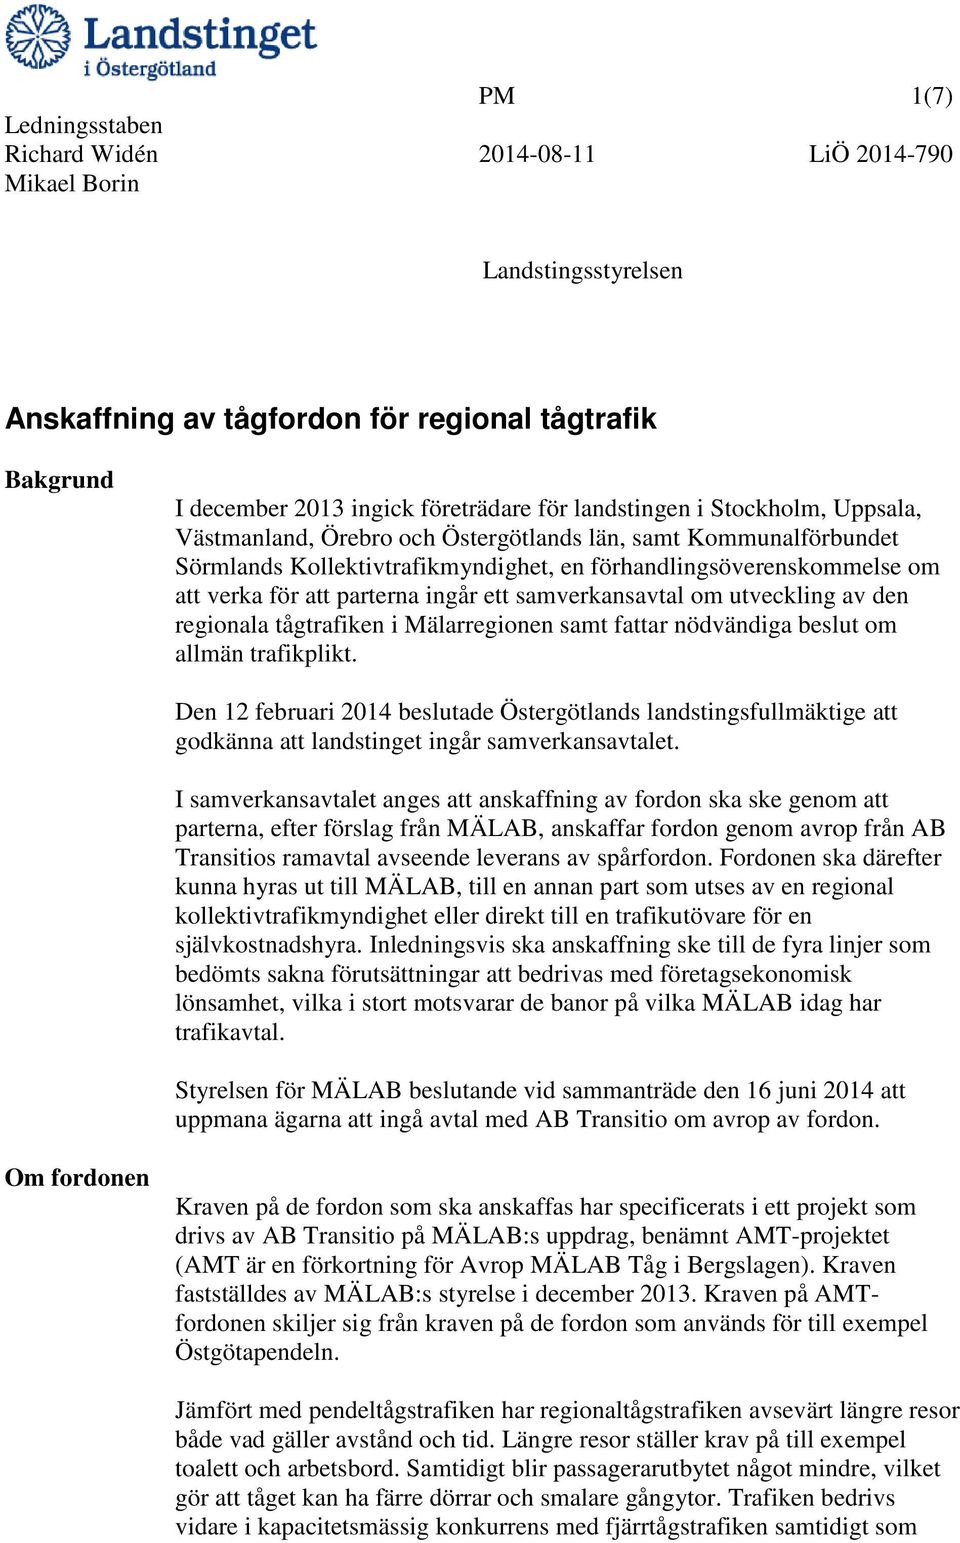 Mälarregionen samt fattar nödvändiga beslut om allmän trafikplikt. Den 12 februari 2014 beslutade Östergötlands landstingsfullmäktige att godkänna att landstinget ingår samverkansavtalet.